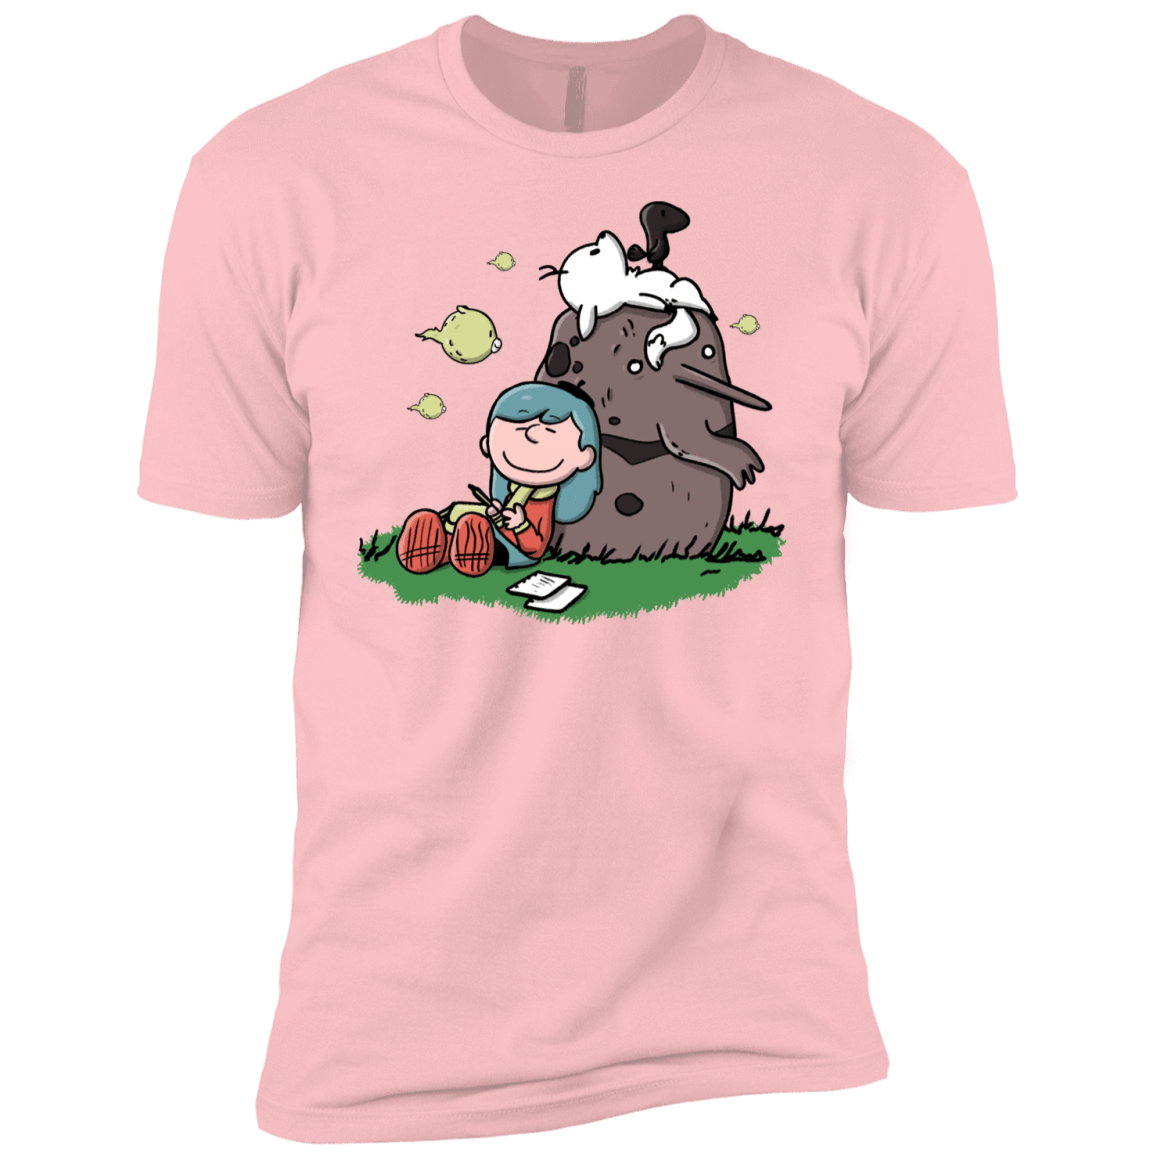 T-Shirts Light Pink / YXS Hilda Brown Boys Premium T-Shirt